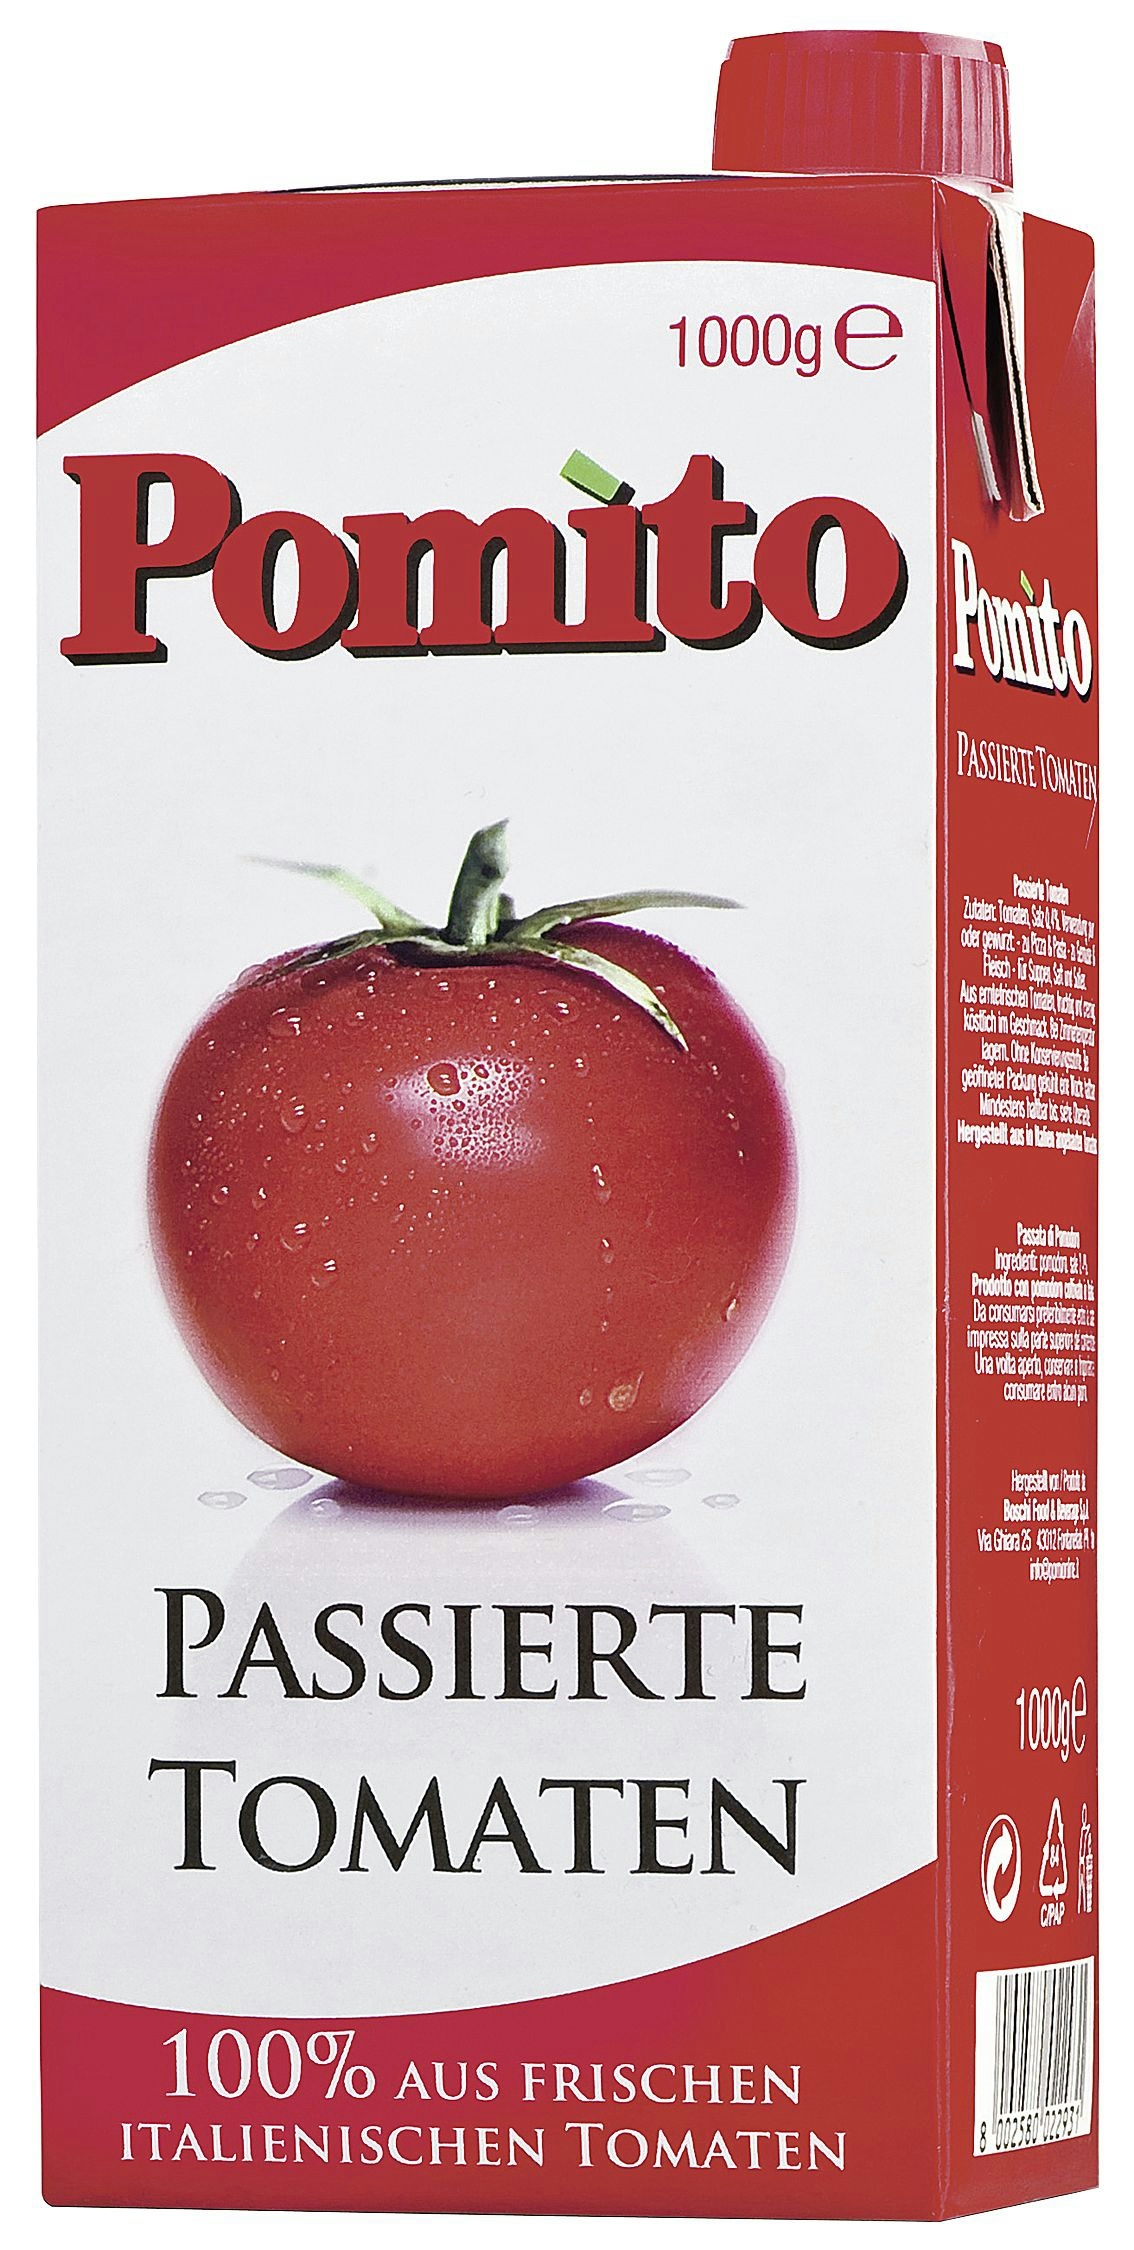 Pomito Passierte Tomaten (1 kg)